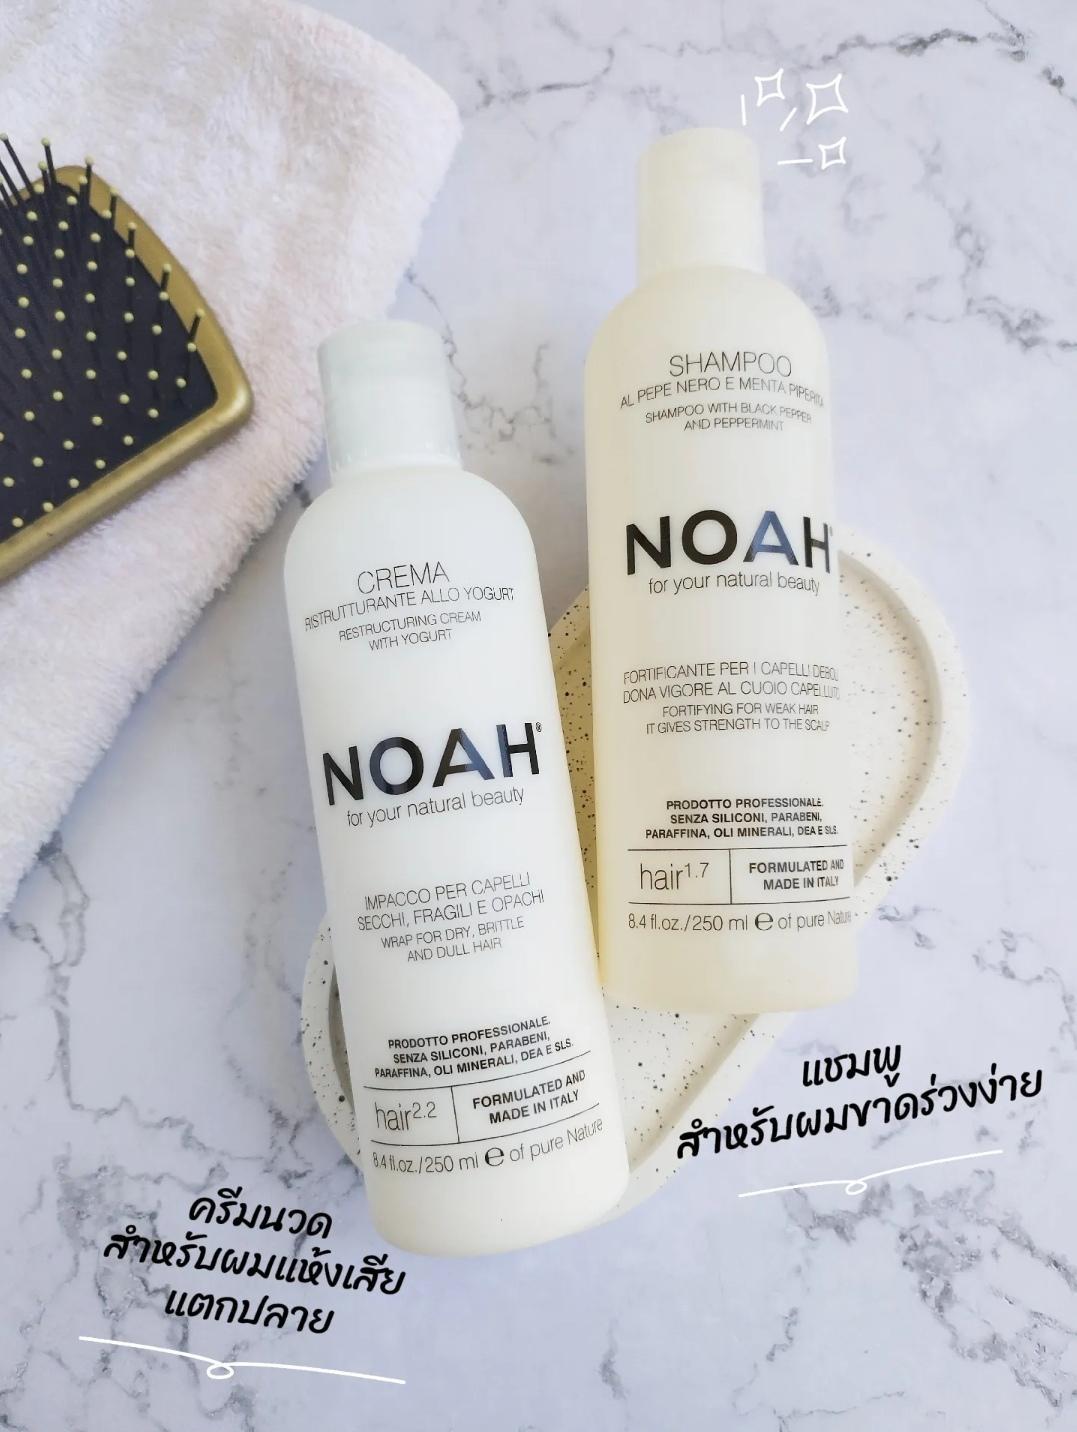 ภาพหน้าปก NOAH Shampoo & Cream เซ็ตคู่ขายดี ที่คนผมแห้ง ขาดร่วงง่ายต้องมี ที่:1